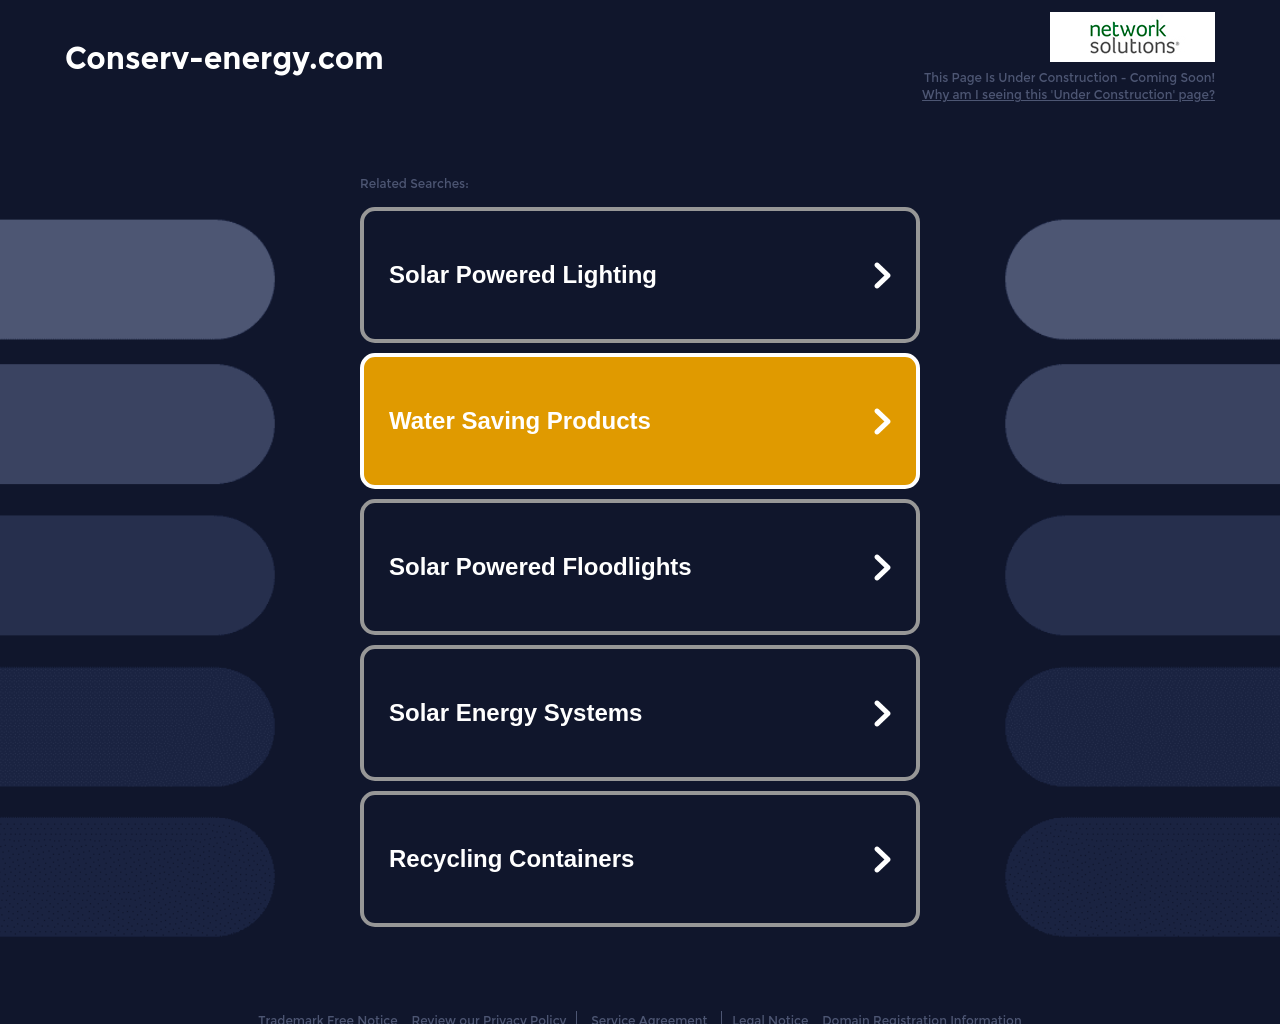 conserv-energy.com